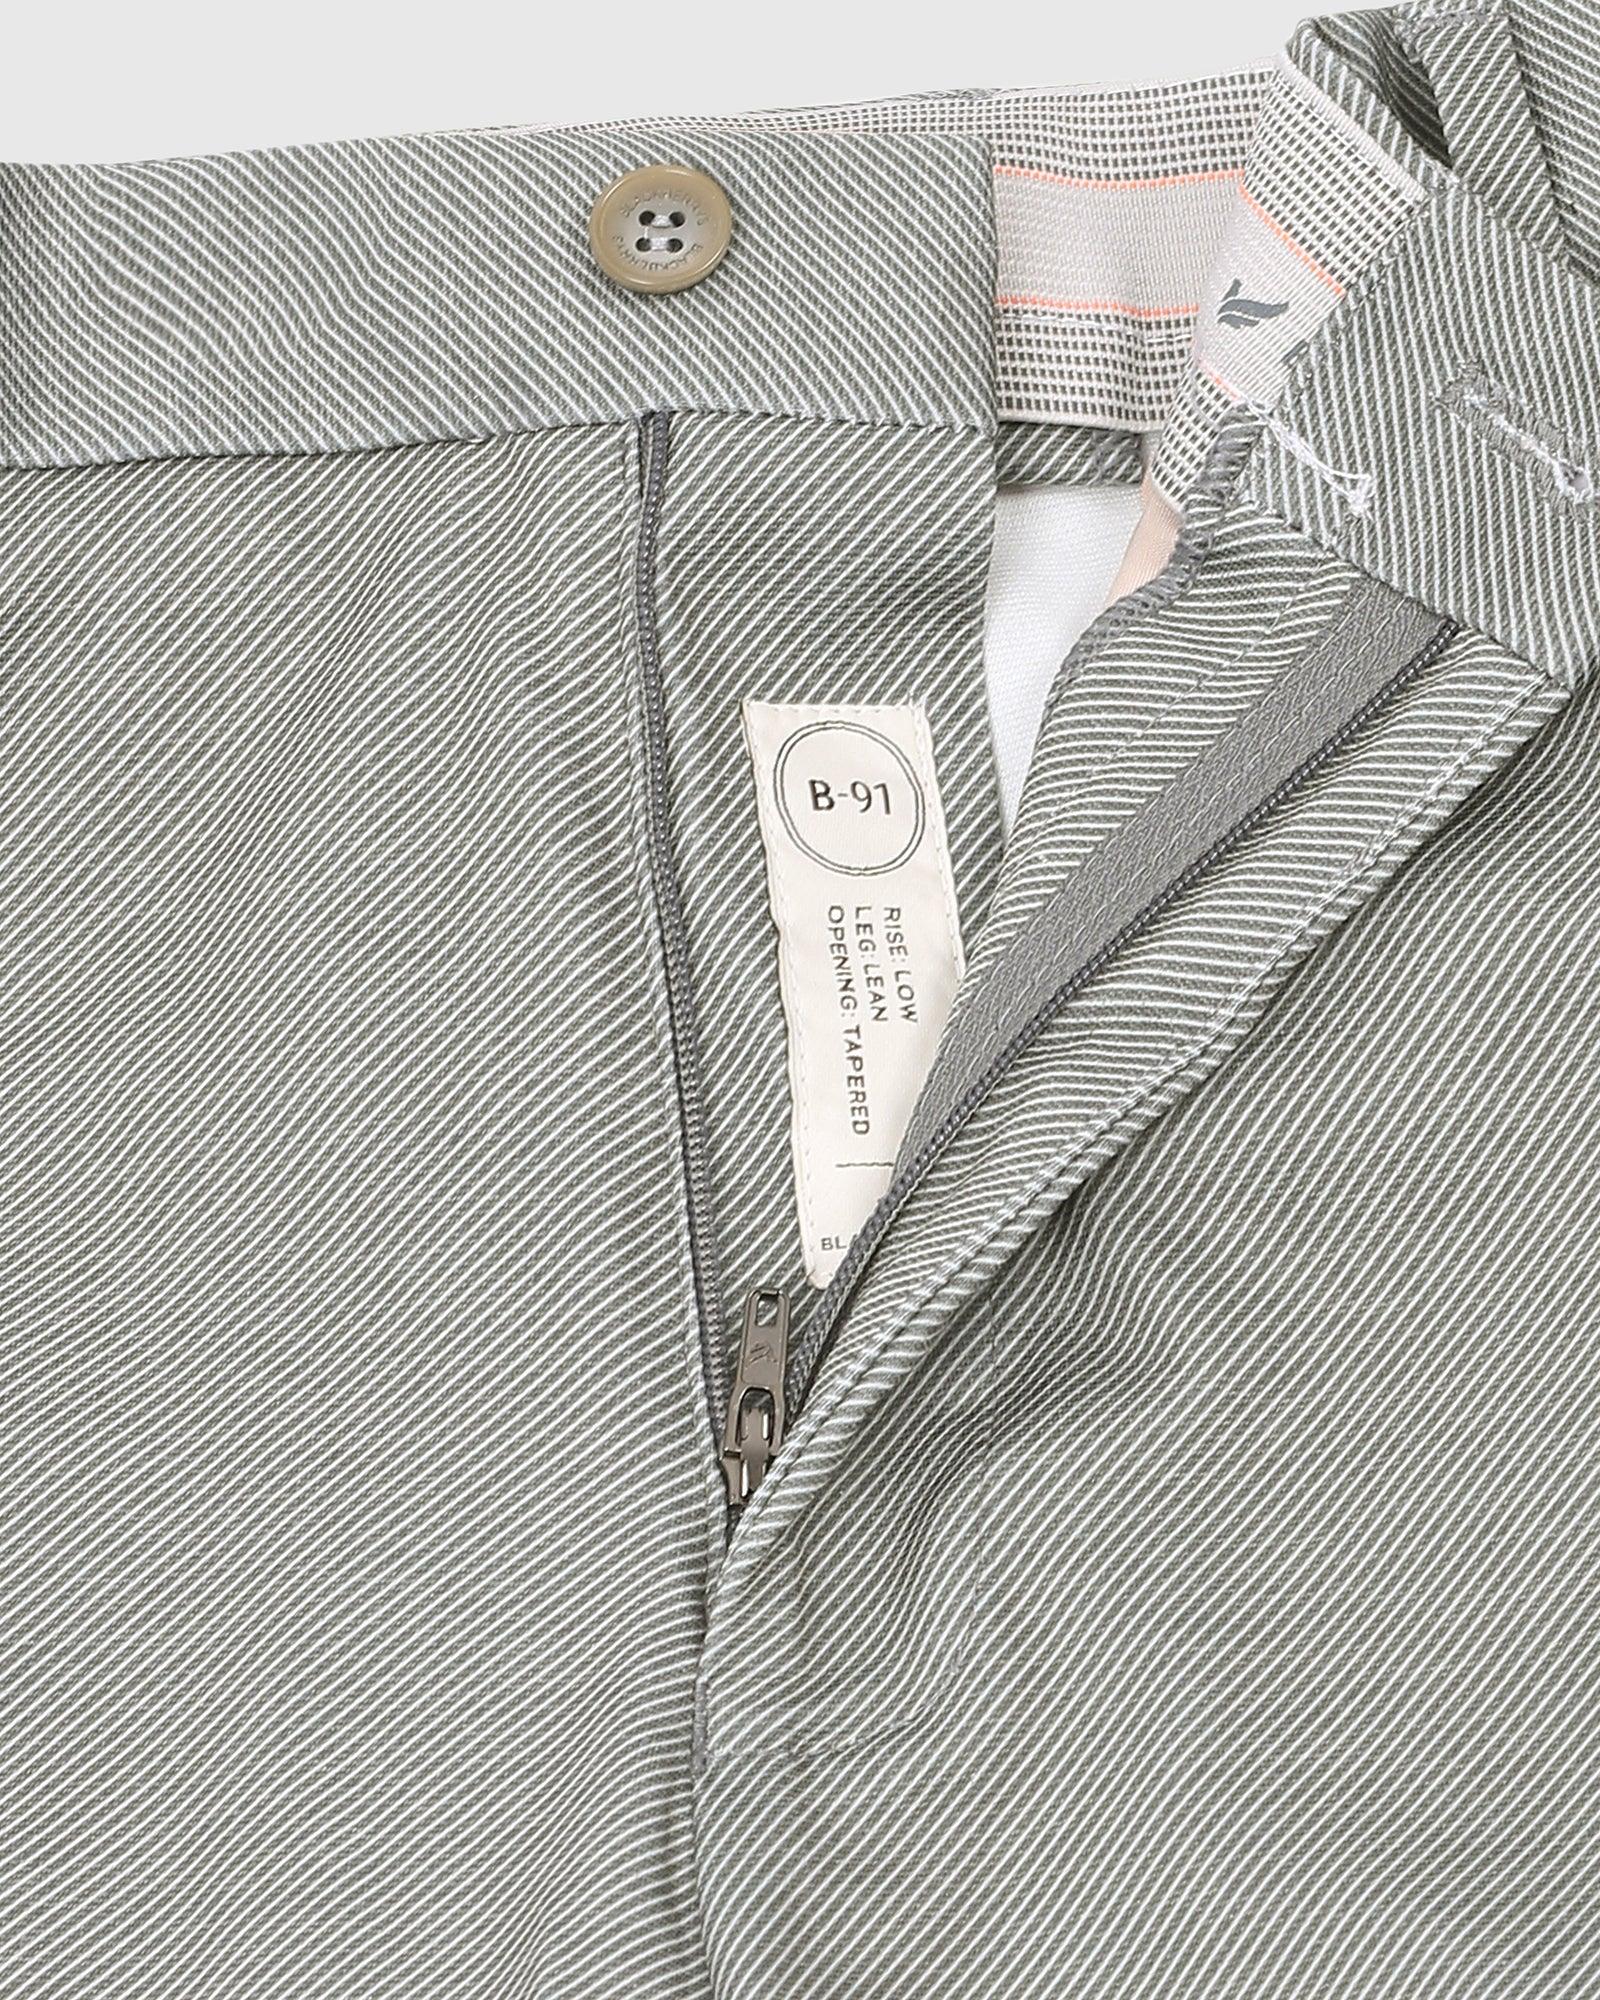 Slim Fit B-91 Formal Olive Textured Trouser - Stret